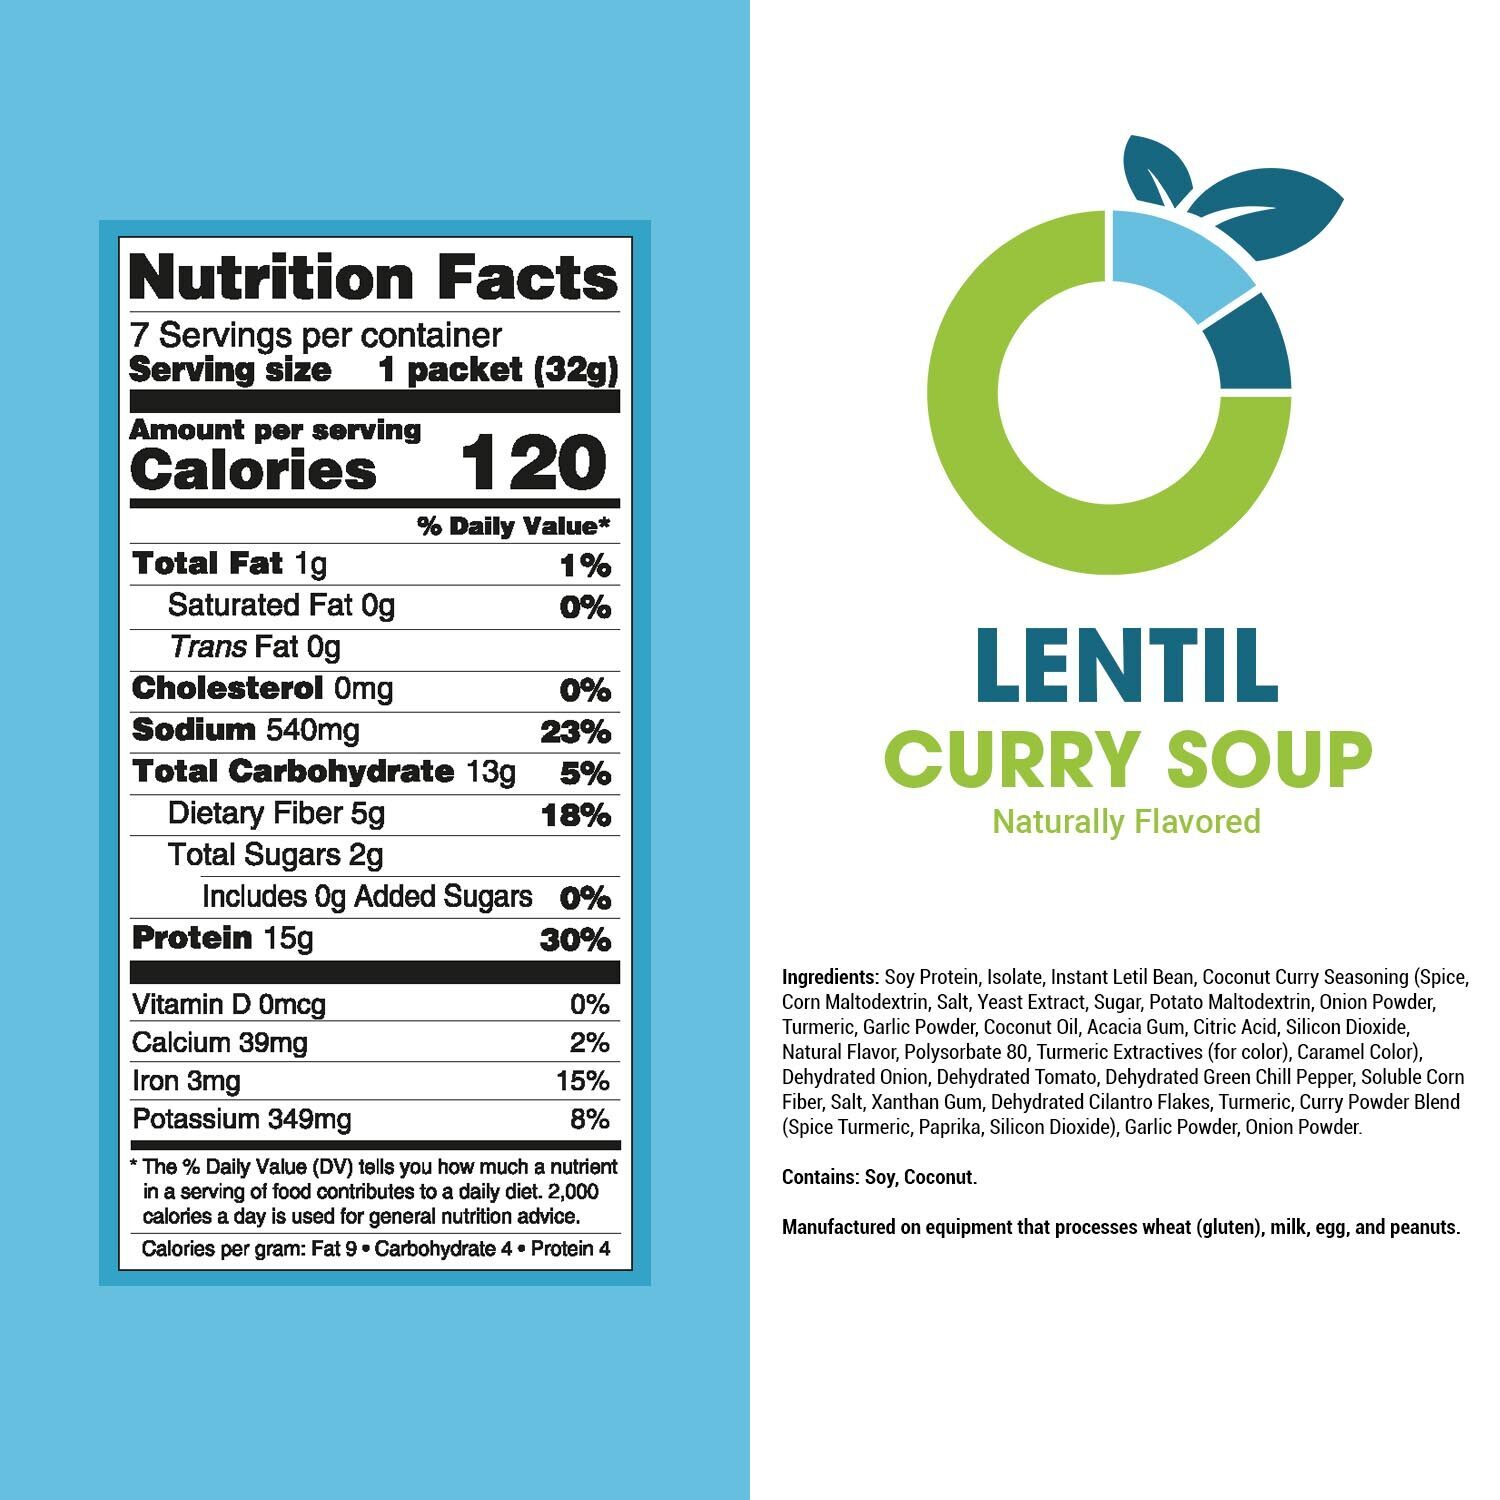 Lentil-Curry-Soup-Panel_05dc05dc0_78742